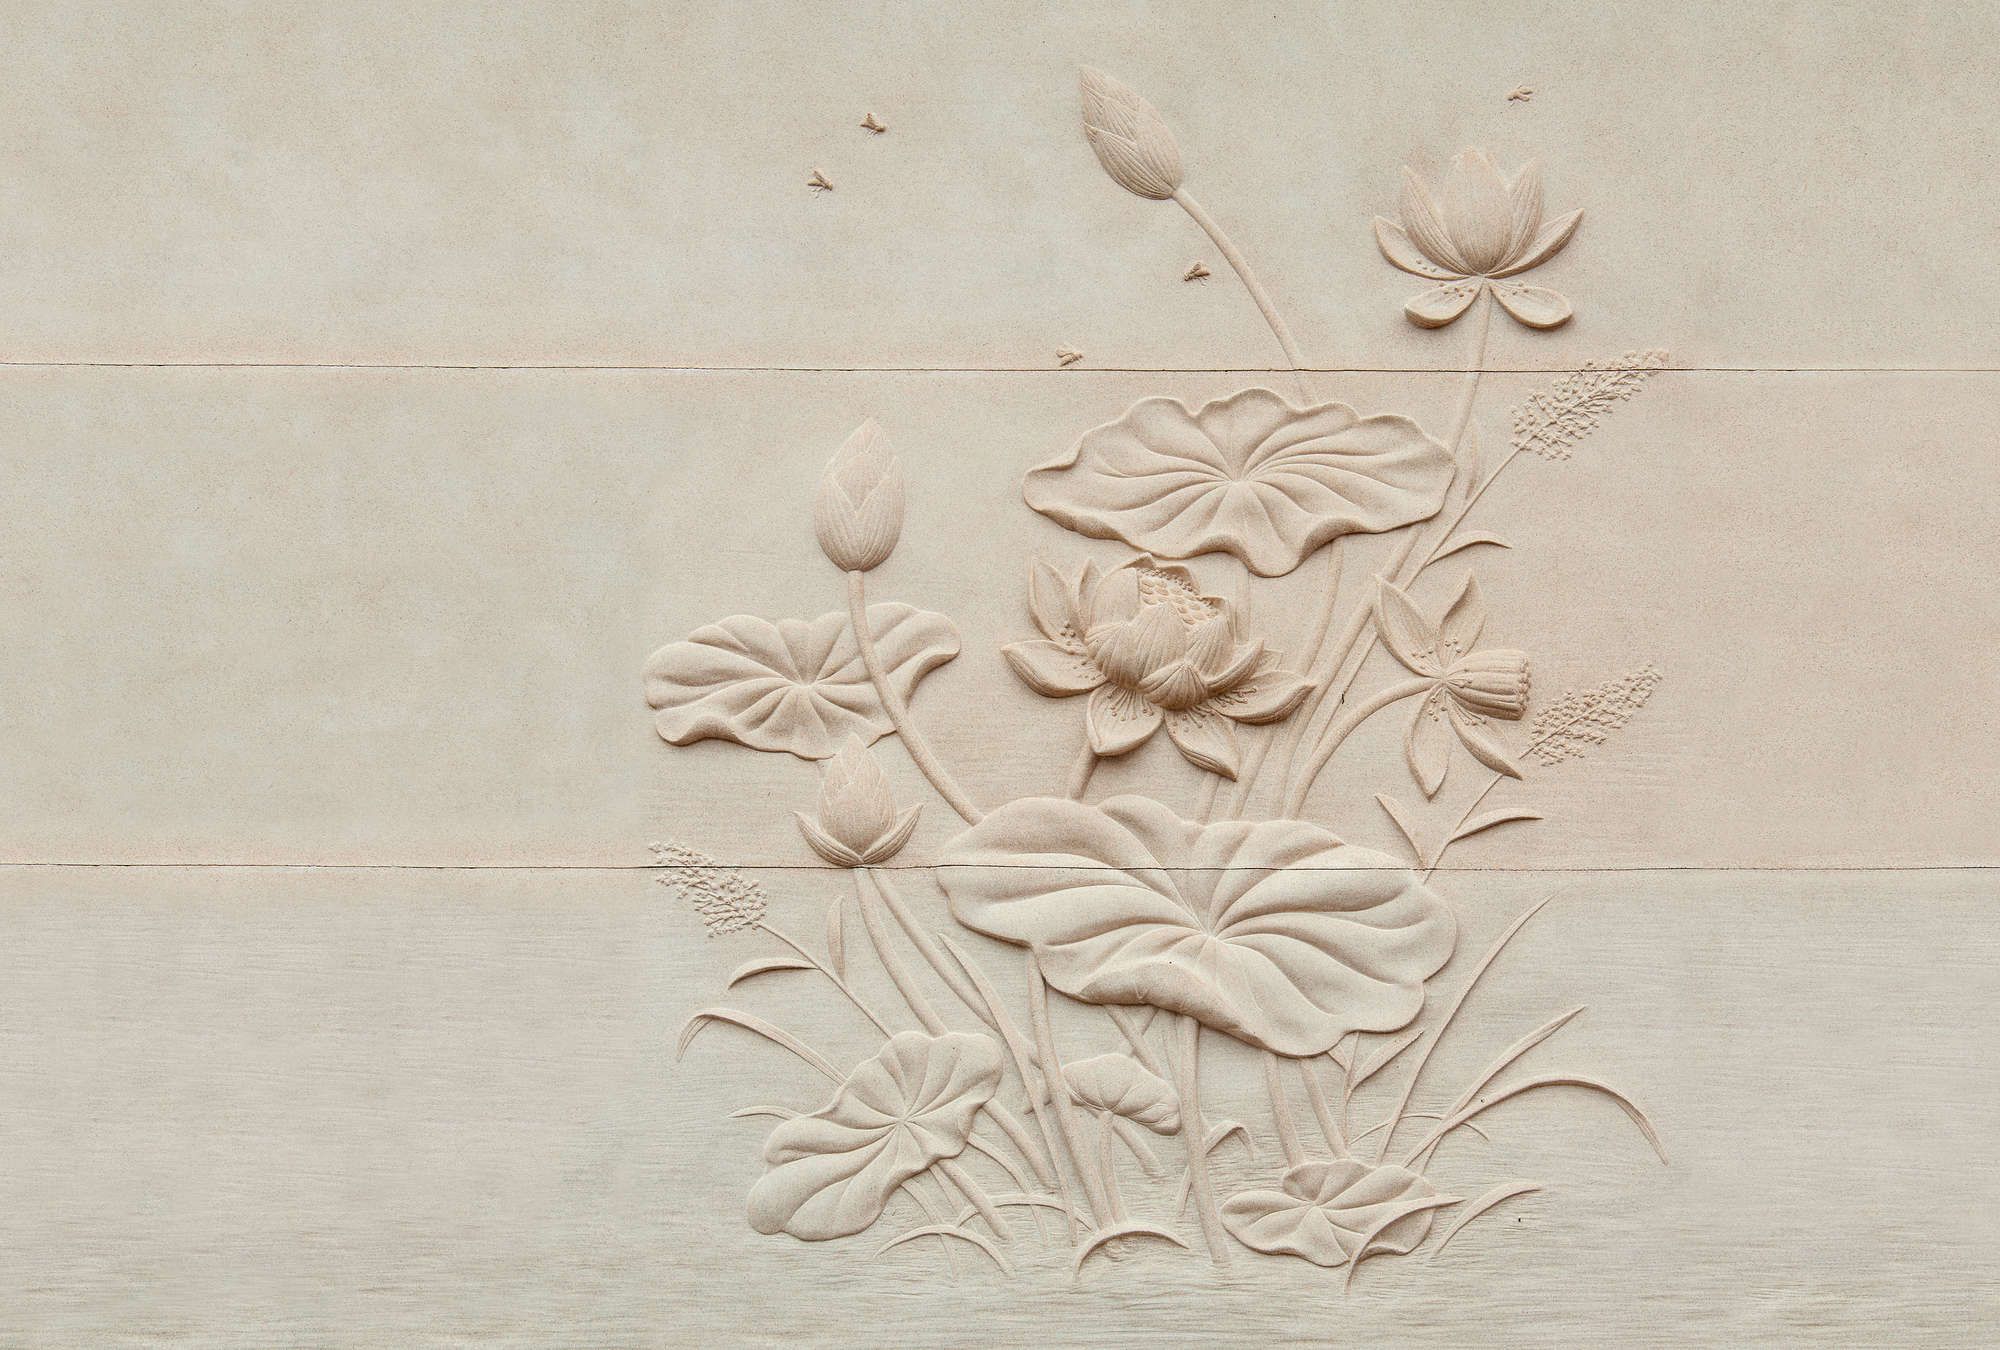             Fotomurali »fiore« - Rilievo floreale su struttura in cemento - Materiali non tessuto premium liscio e leggermente lucido
        